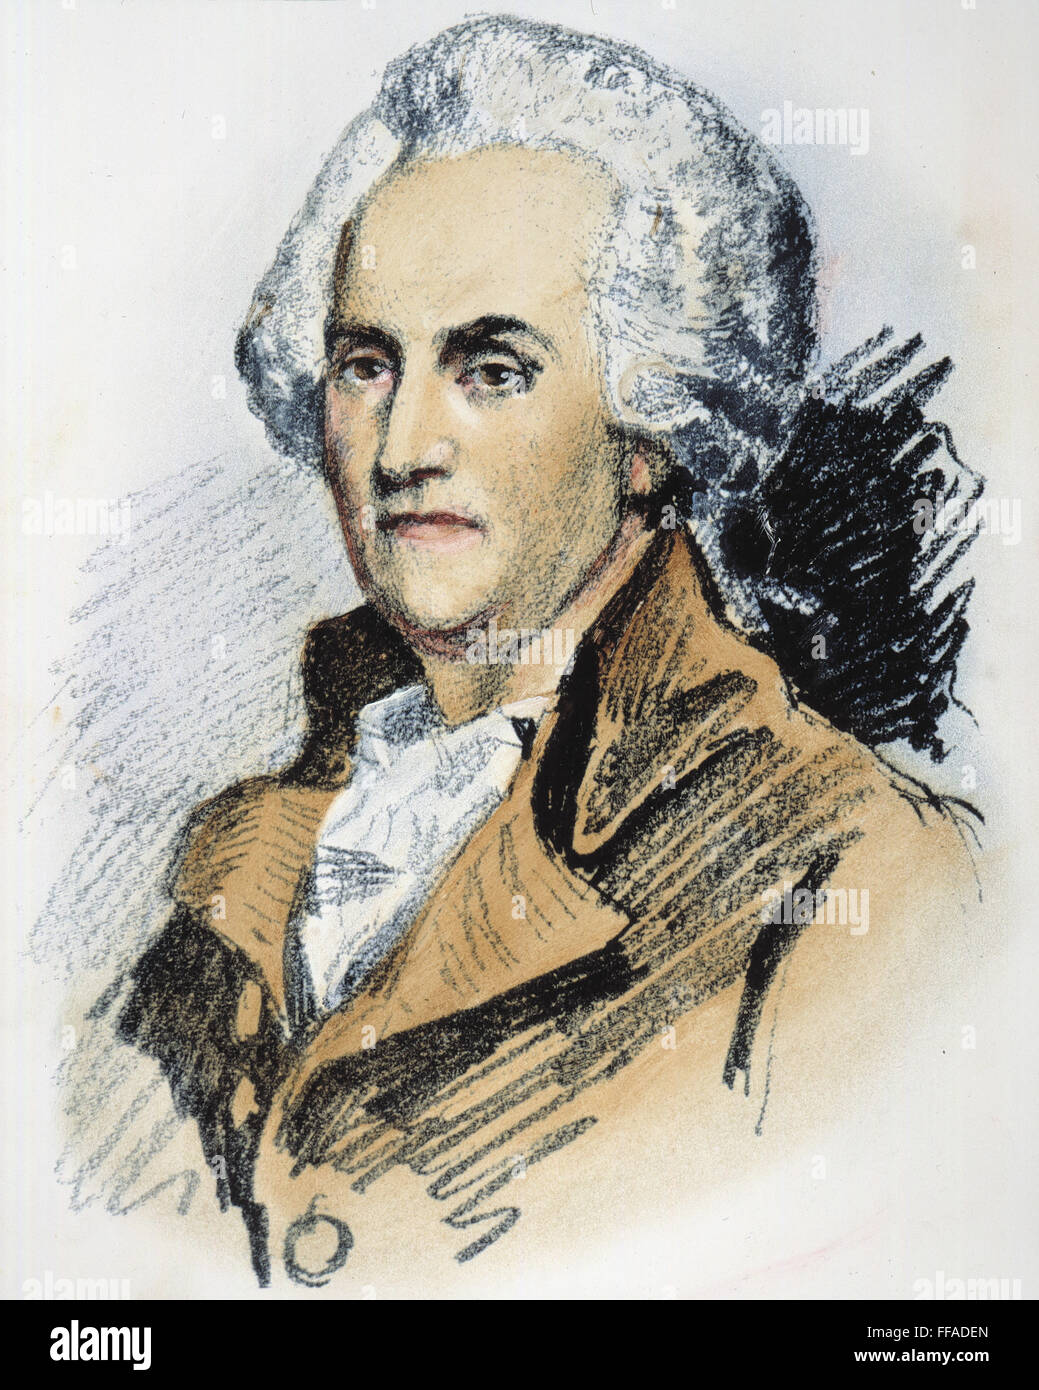 WILLIAM FRANKLIN (1731-1813). /nAmerican Kolonialbeamter: farbige Bleistiftzeichnung von Albert Rosenthal nach einem zeitgenössischen Porträt. Stockfoto